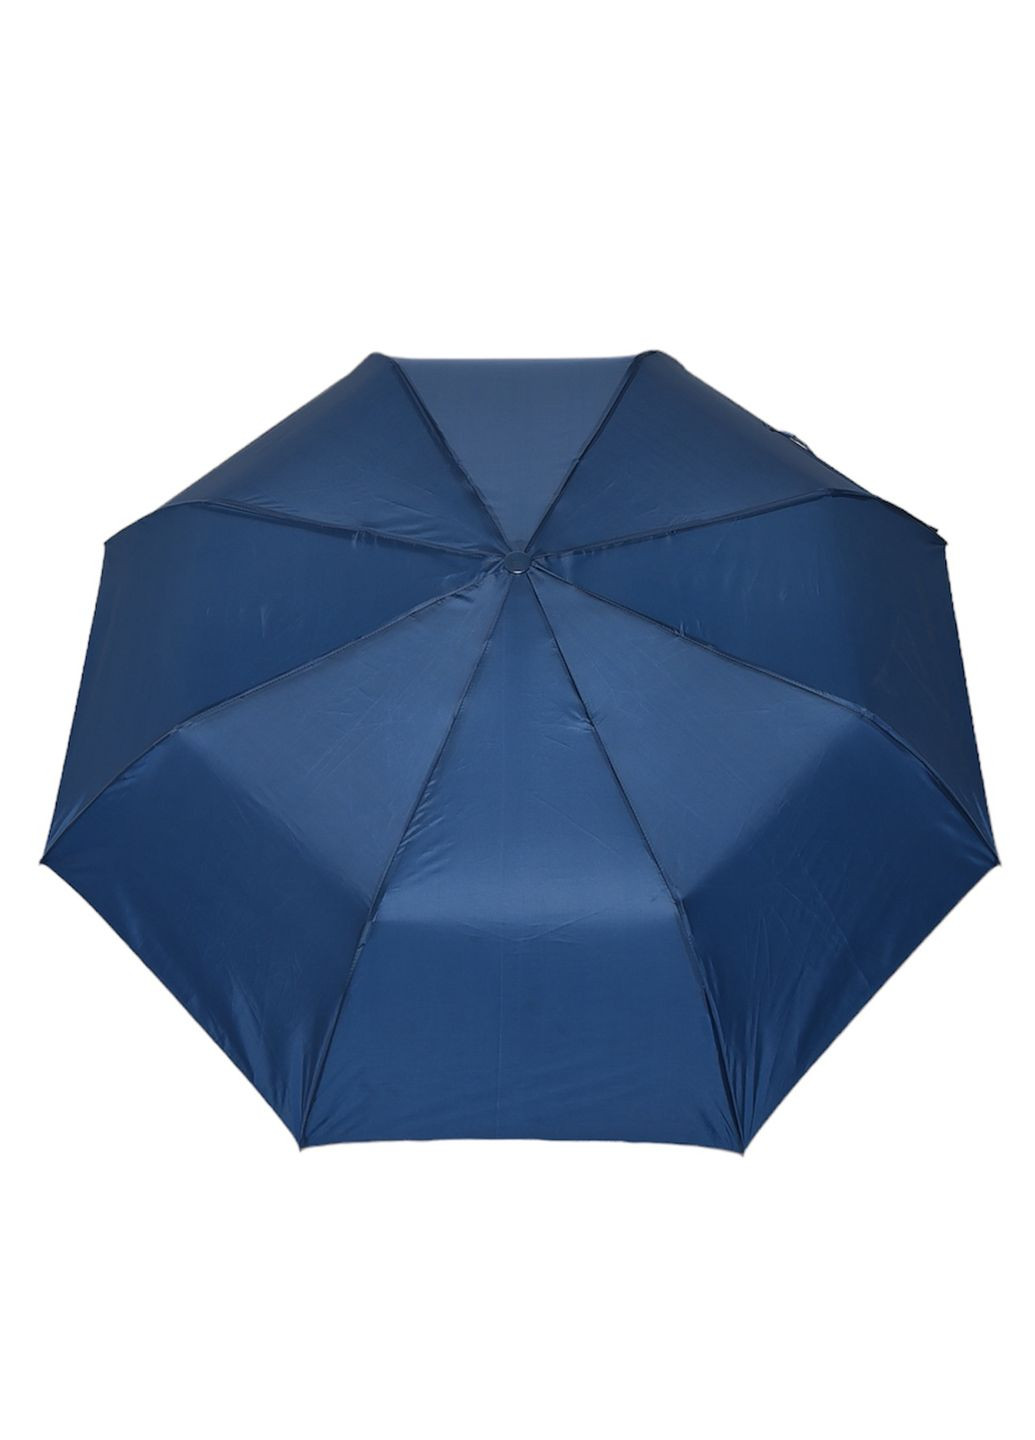 Зонт полуавтомат темно-синего цвета Let's Shop (269088918)